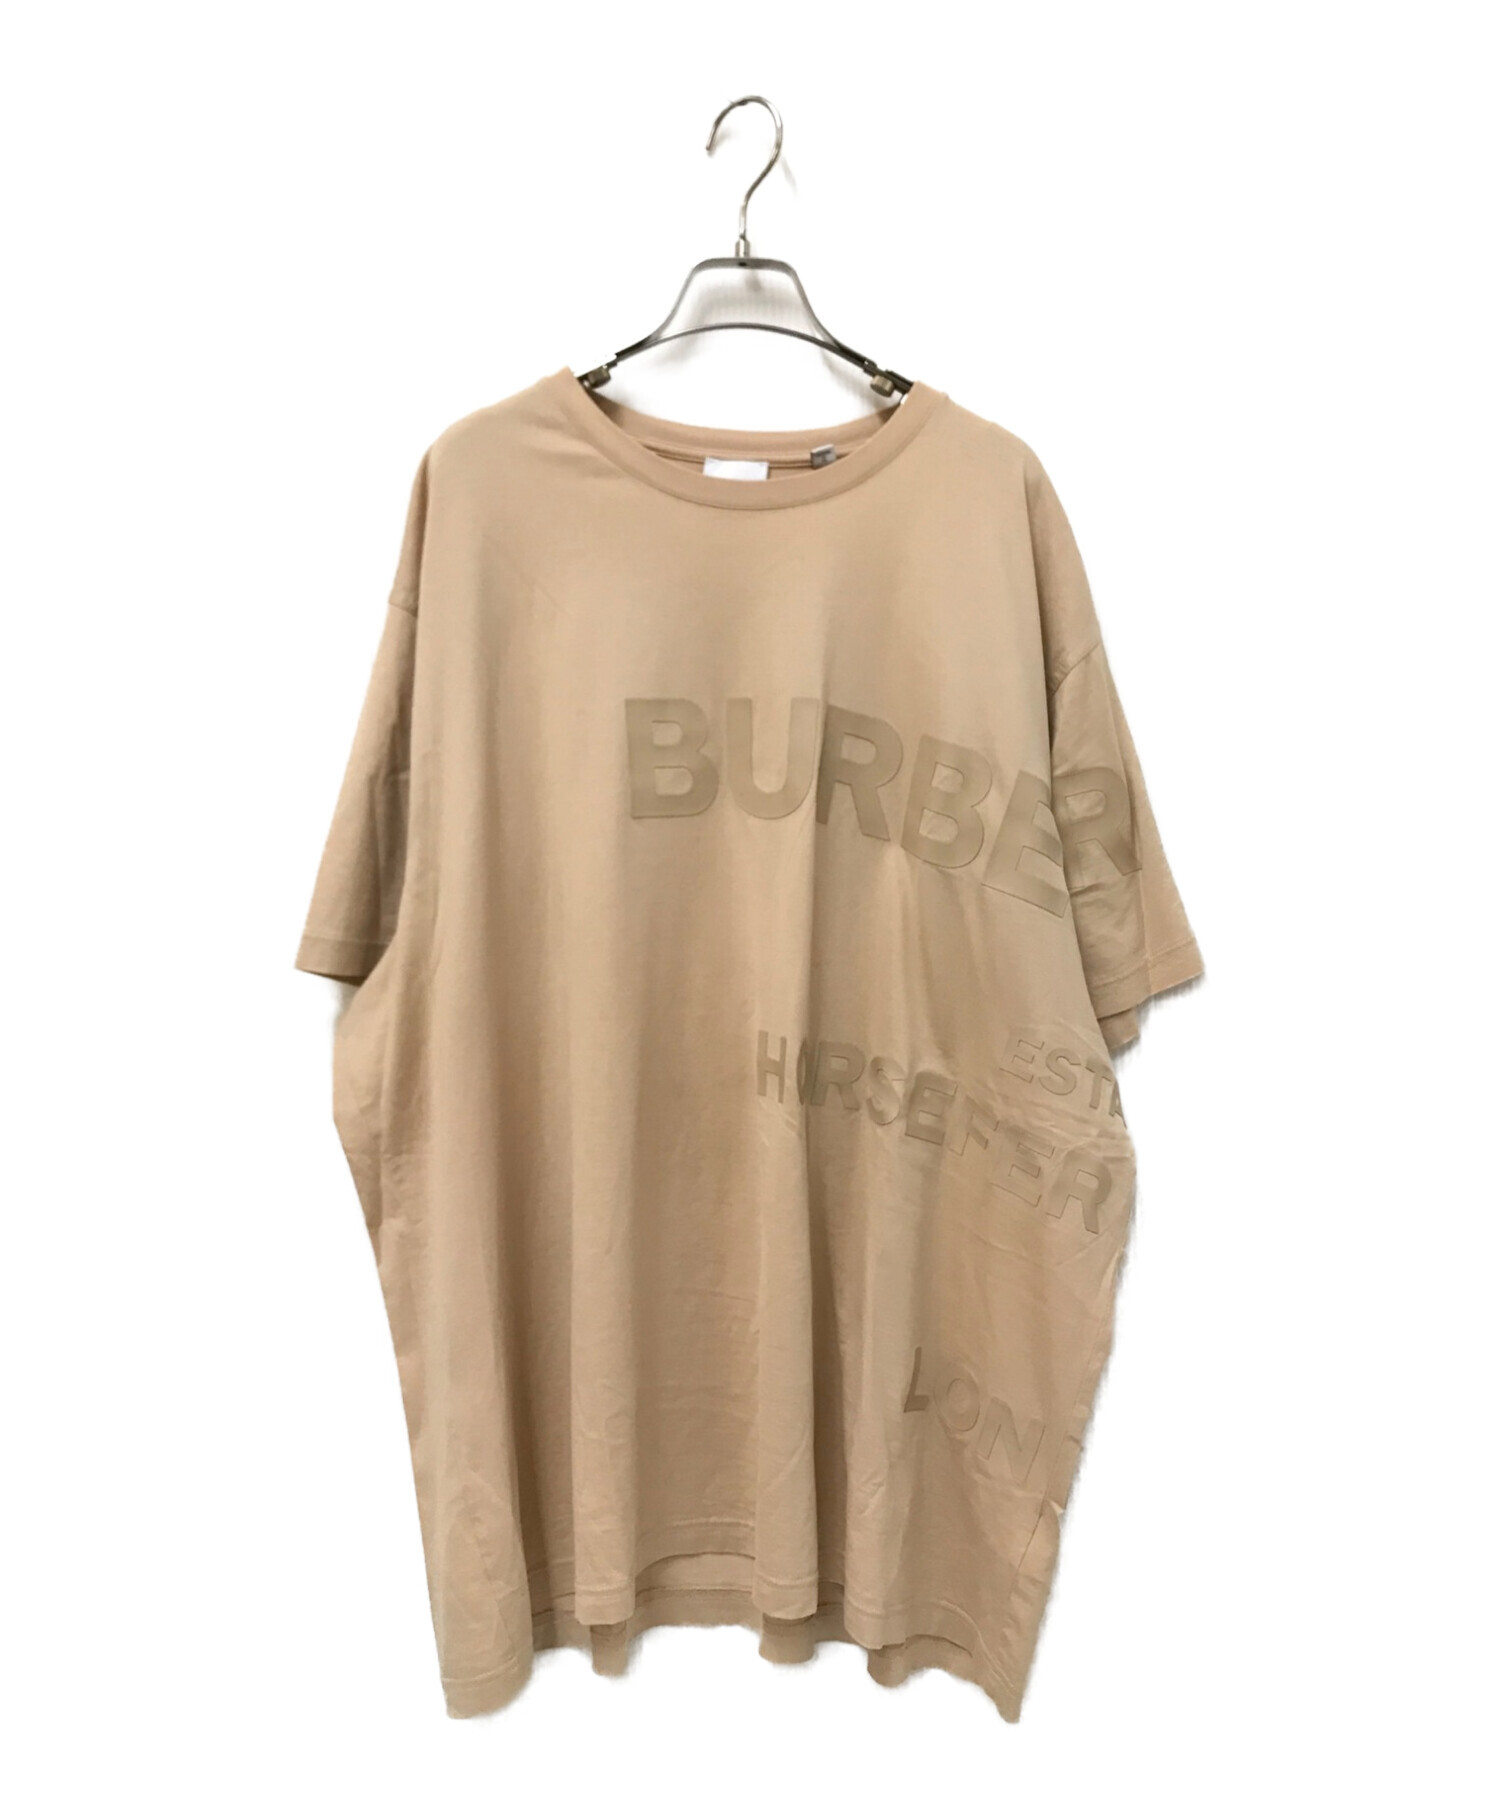 バーバリー BURBERRY Tシャツ XL - トップス